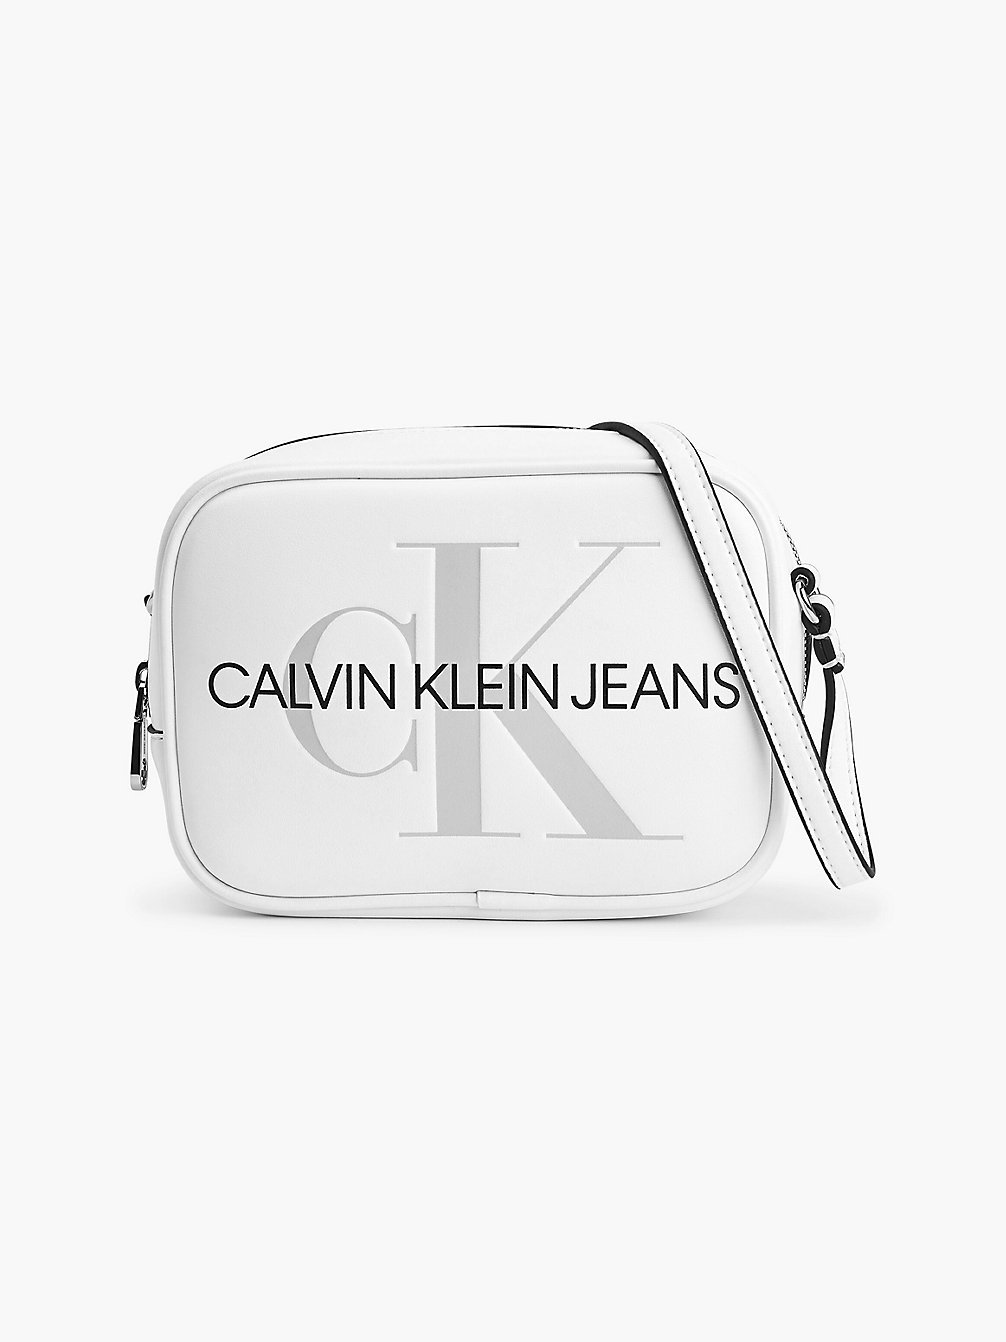 BRIGHT WHITE Crossbody Bag undefined women Calvin Klein